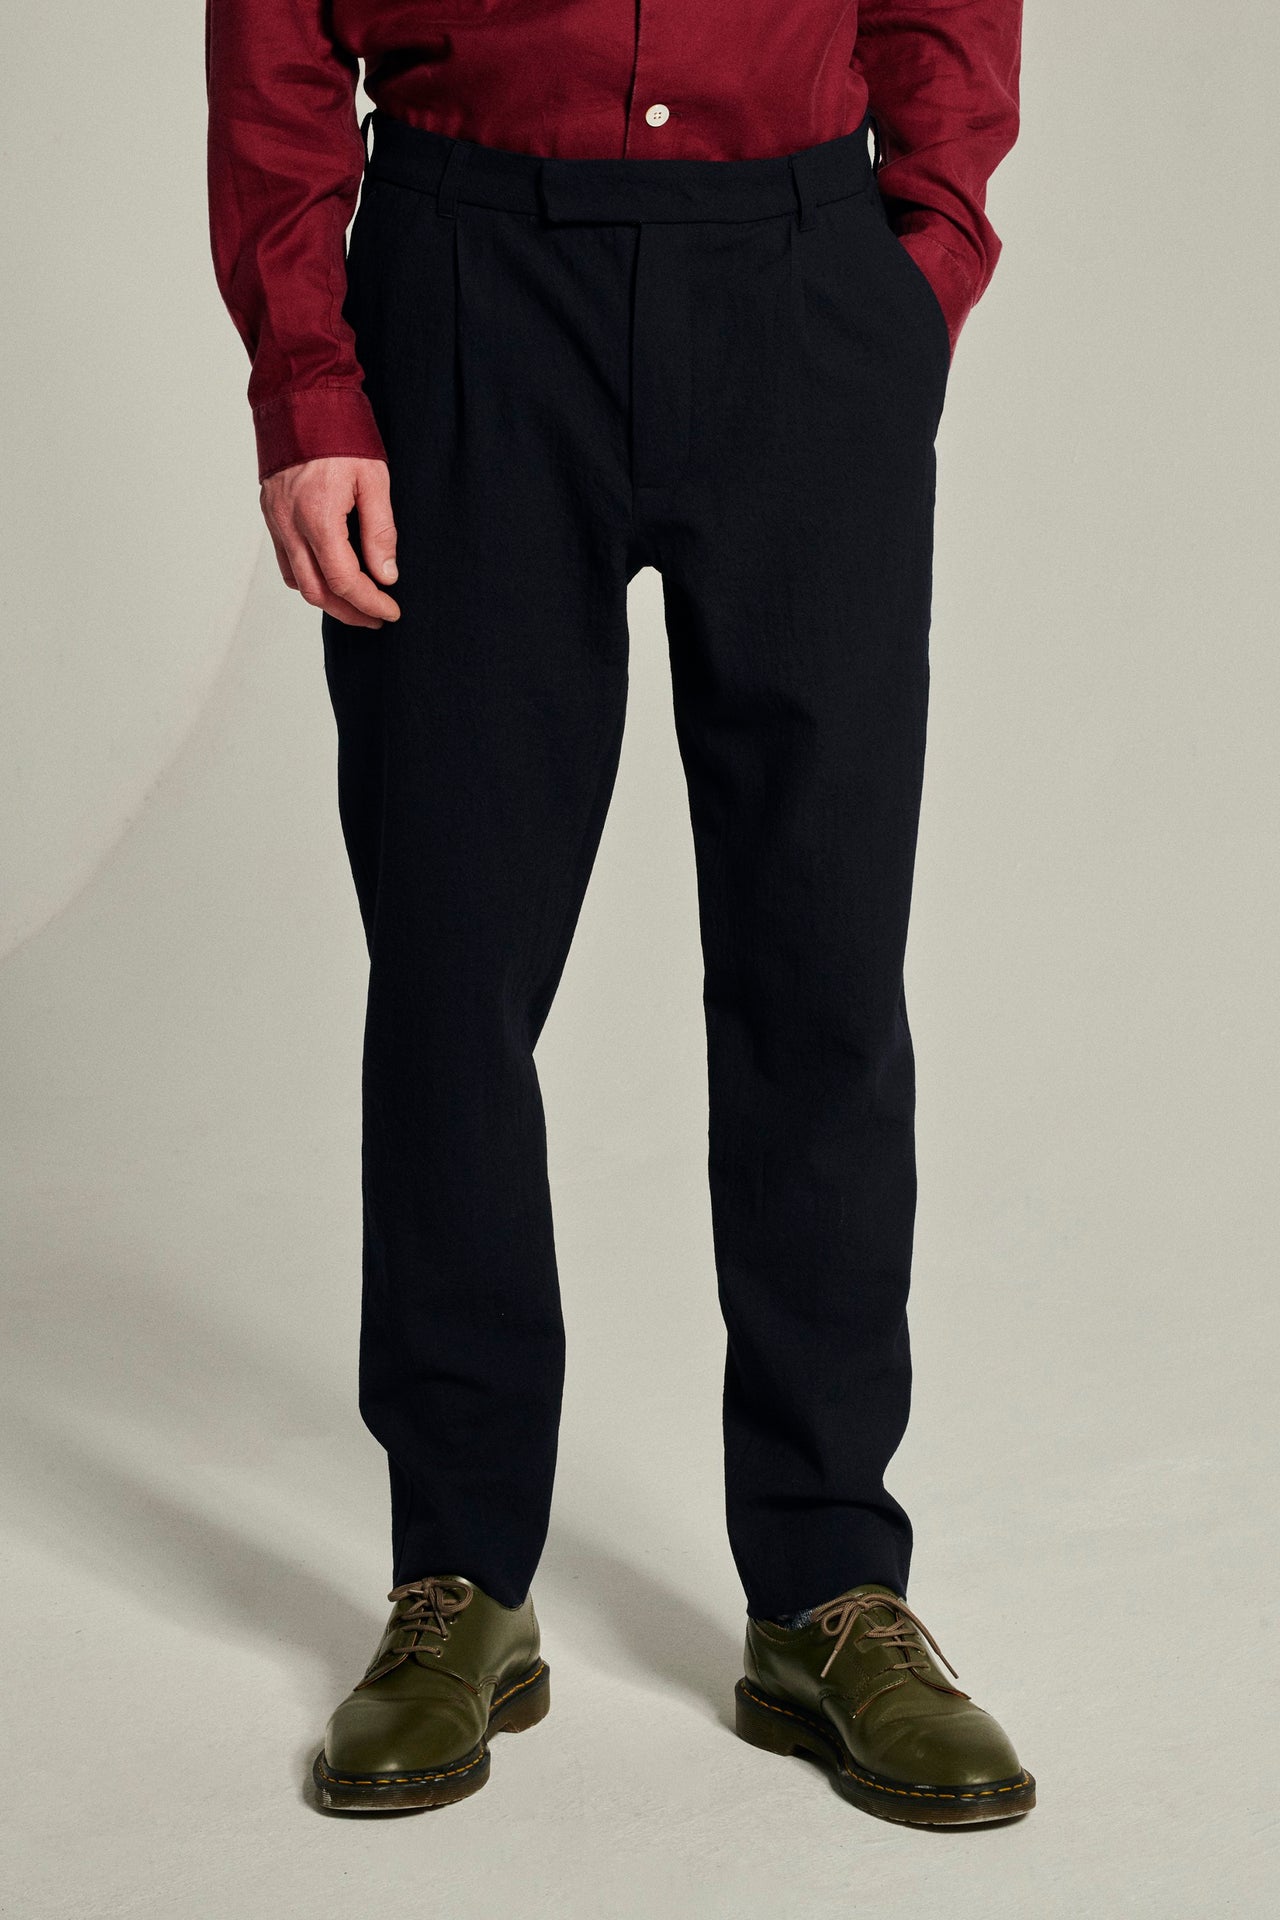 Bohemian Trousers in a Navy Blue Italian Soft Merino Wool